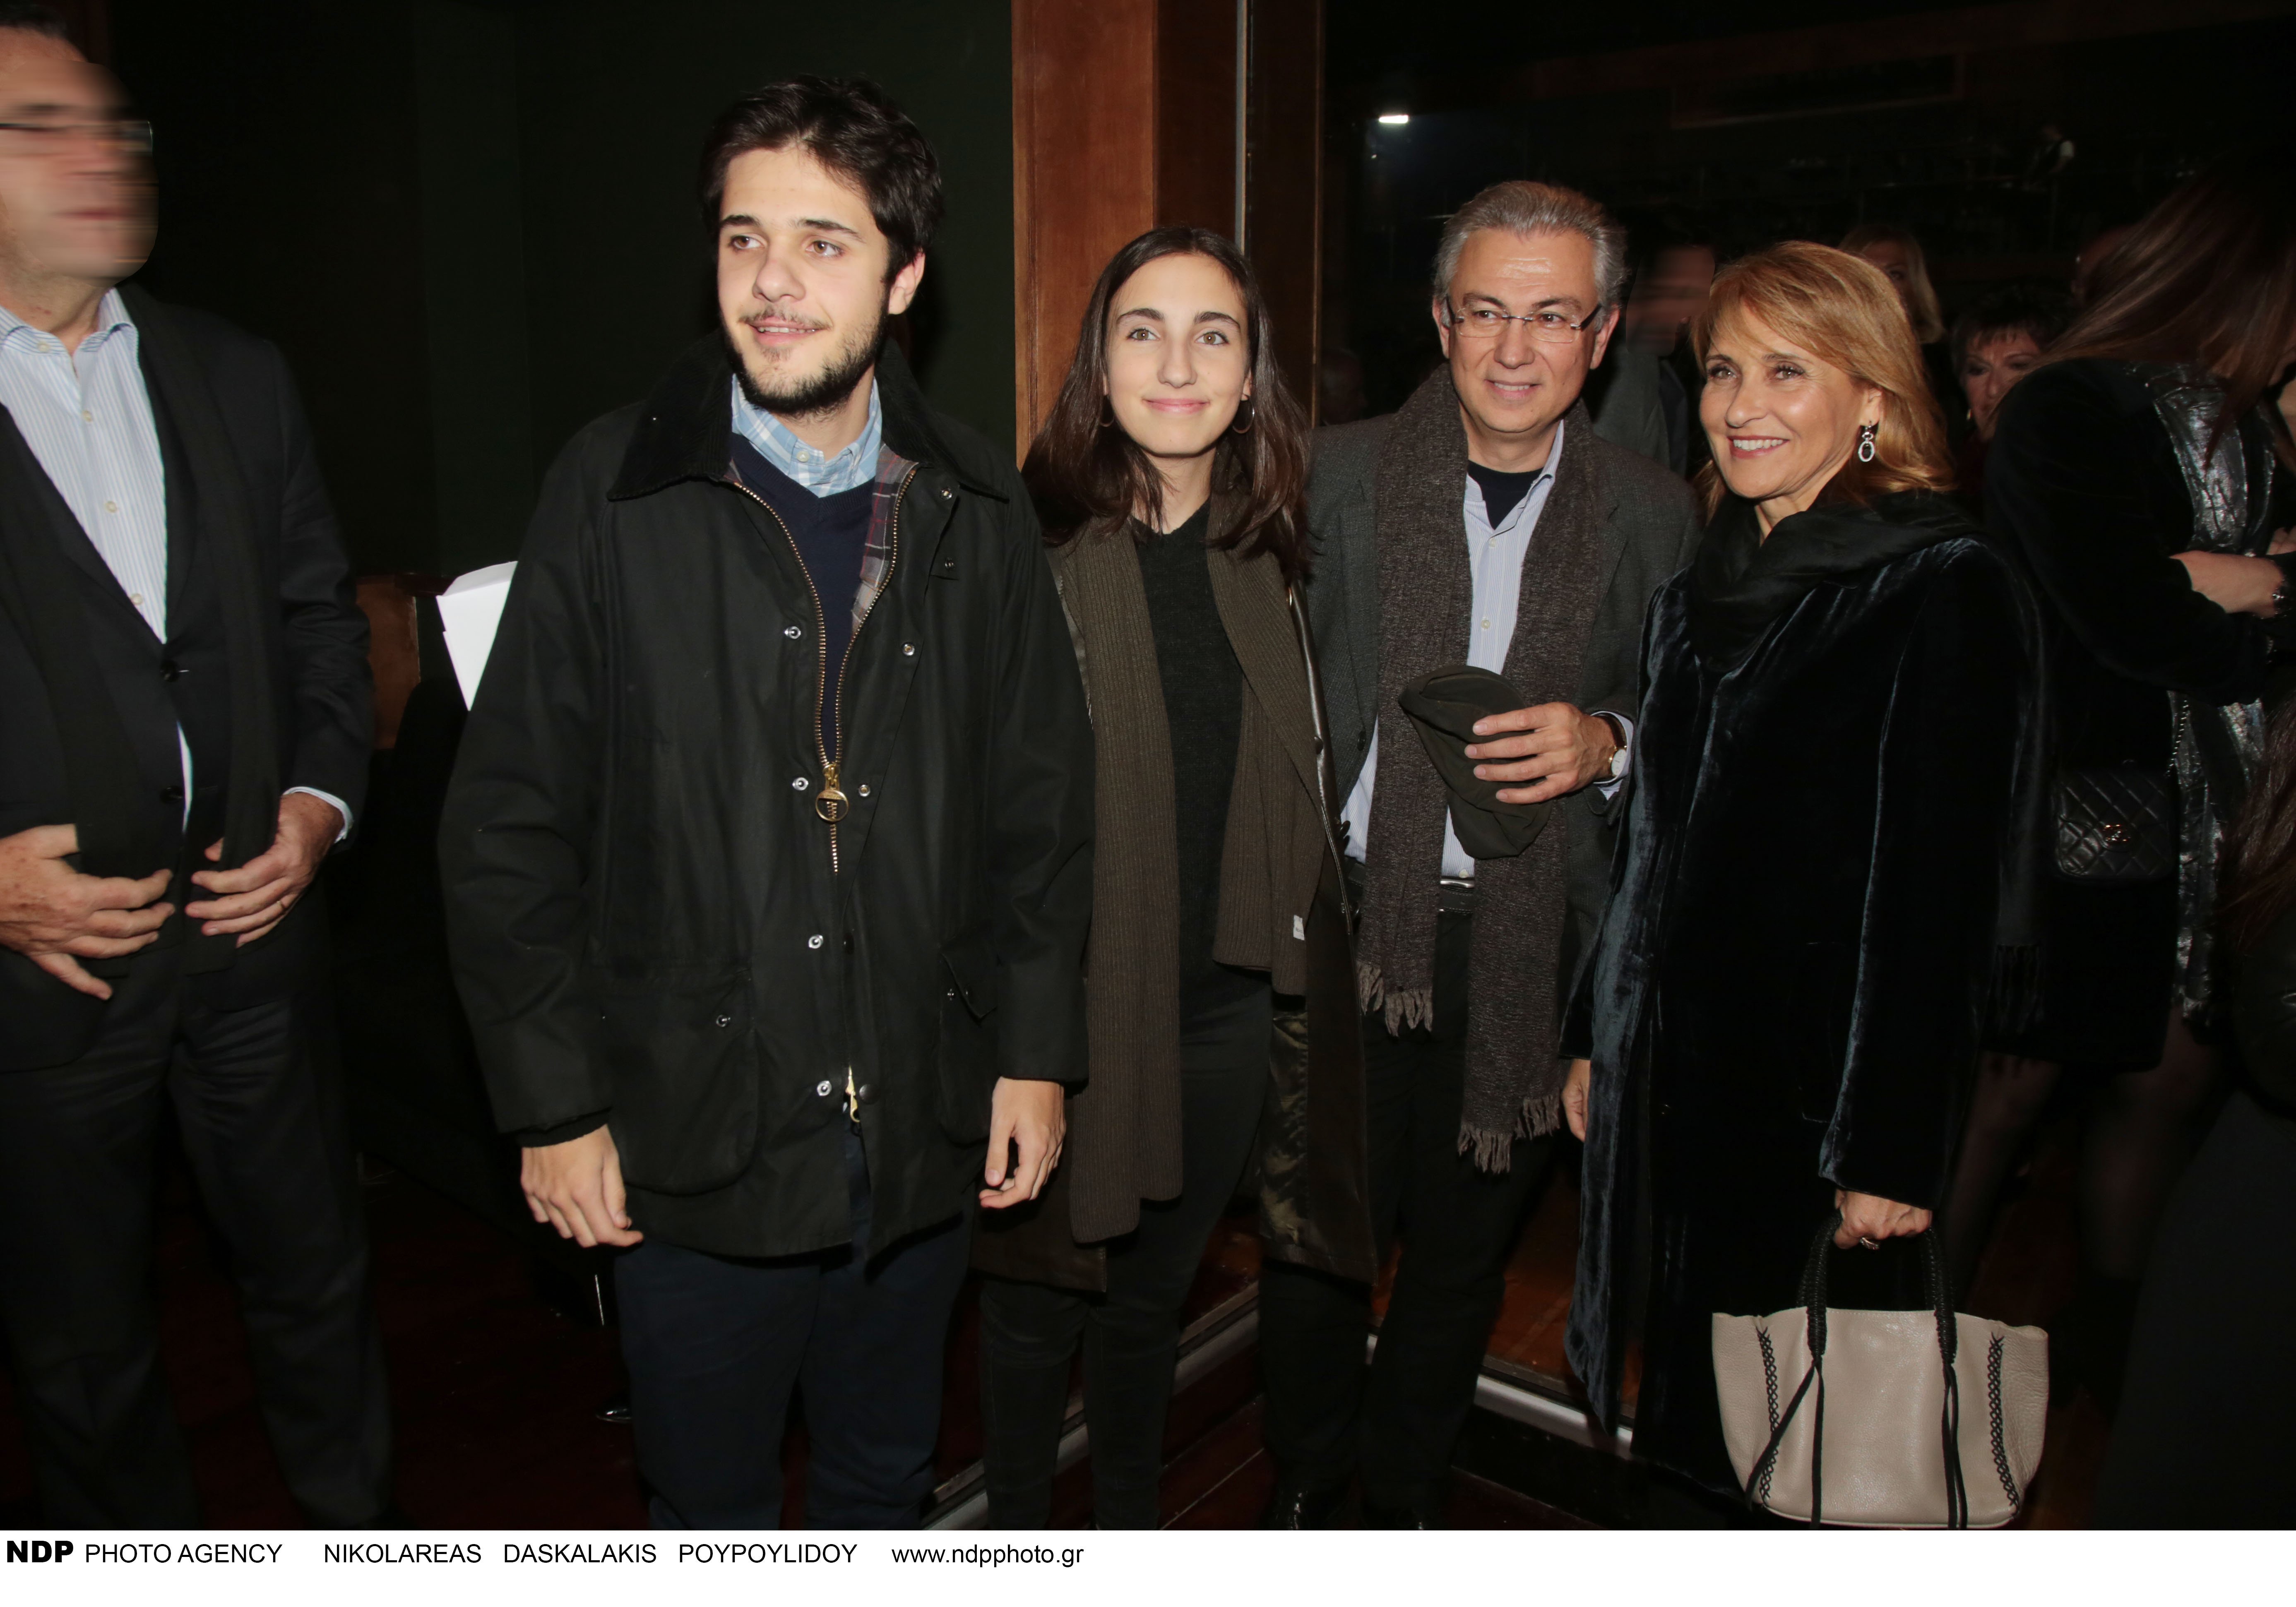 Μάρα Ζαχαρέα: Δείτε τον γιο και την κόρη της παρουσιάστριας που έχει αποκτήσει με τον σύζυγό της, Θοδωρή Ρουσόπουλο